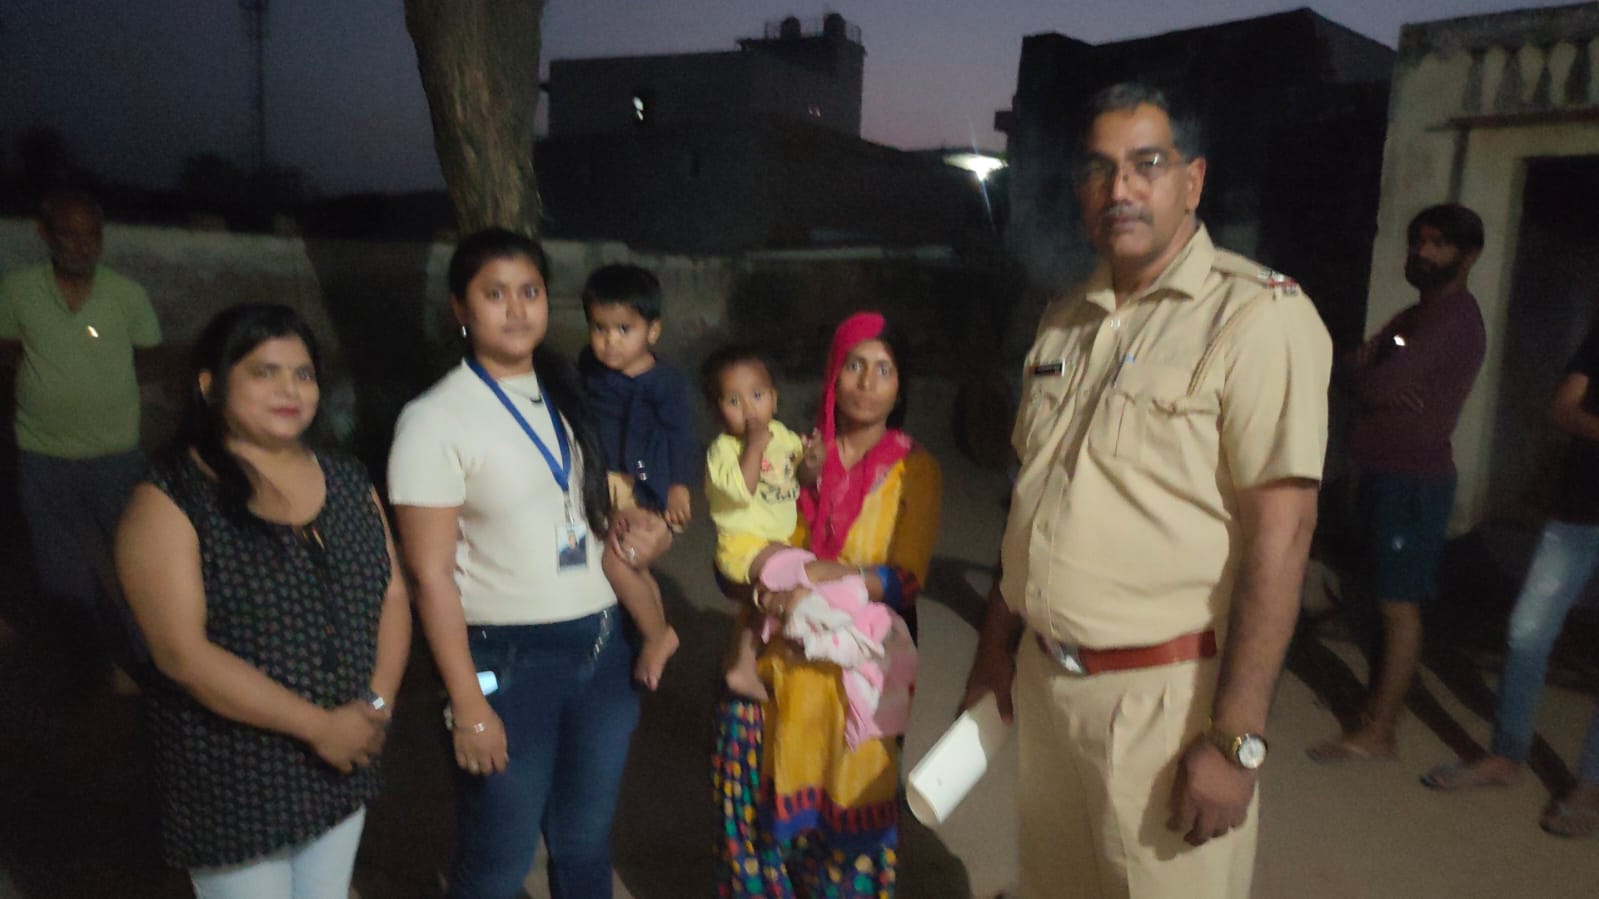 मथुरा से उठाई गई बच्ची भीम सेना और गुरुग्राम पुलिस के संयुक्त ऑपरेशन से सकुशल बरामद, भौंडसी के रिठौज गांव से बरामद की गई 2 साल की दुधमुंही बच्ची मां को सकुशल सुपुर्द | New India Times